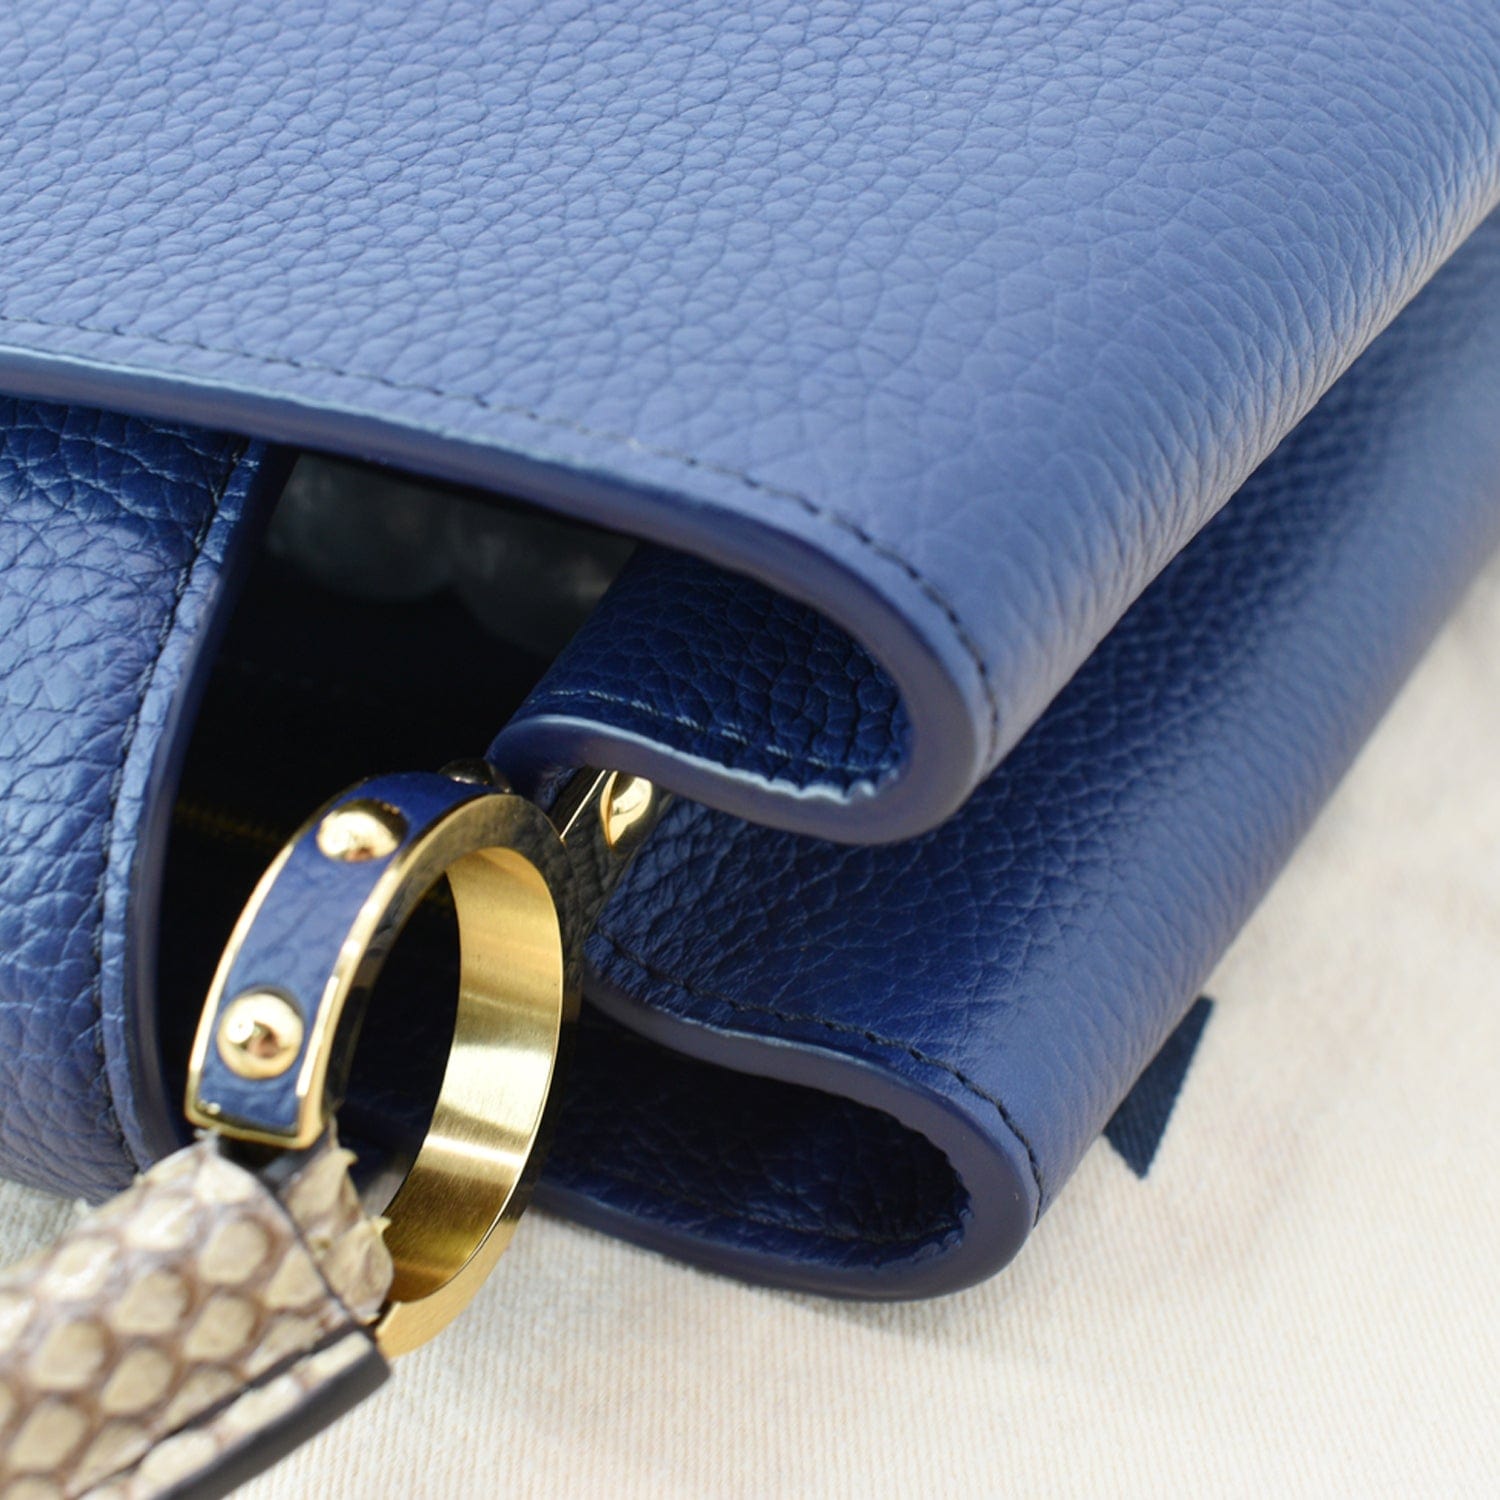 Louis Vuitton Capucines MM Handbag Taurillon Leather Blue M59438